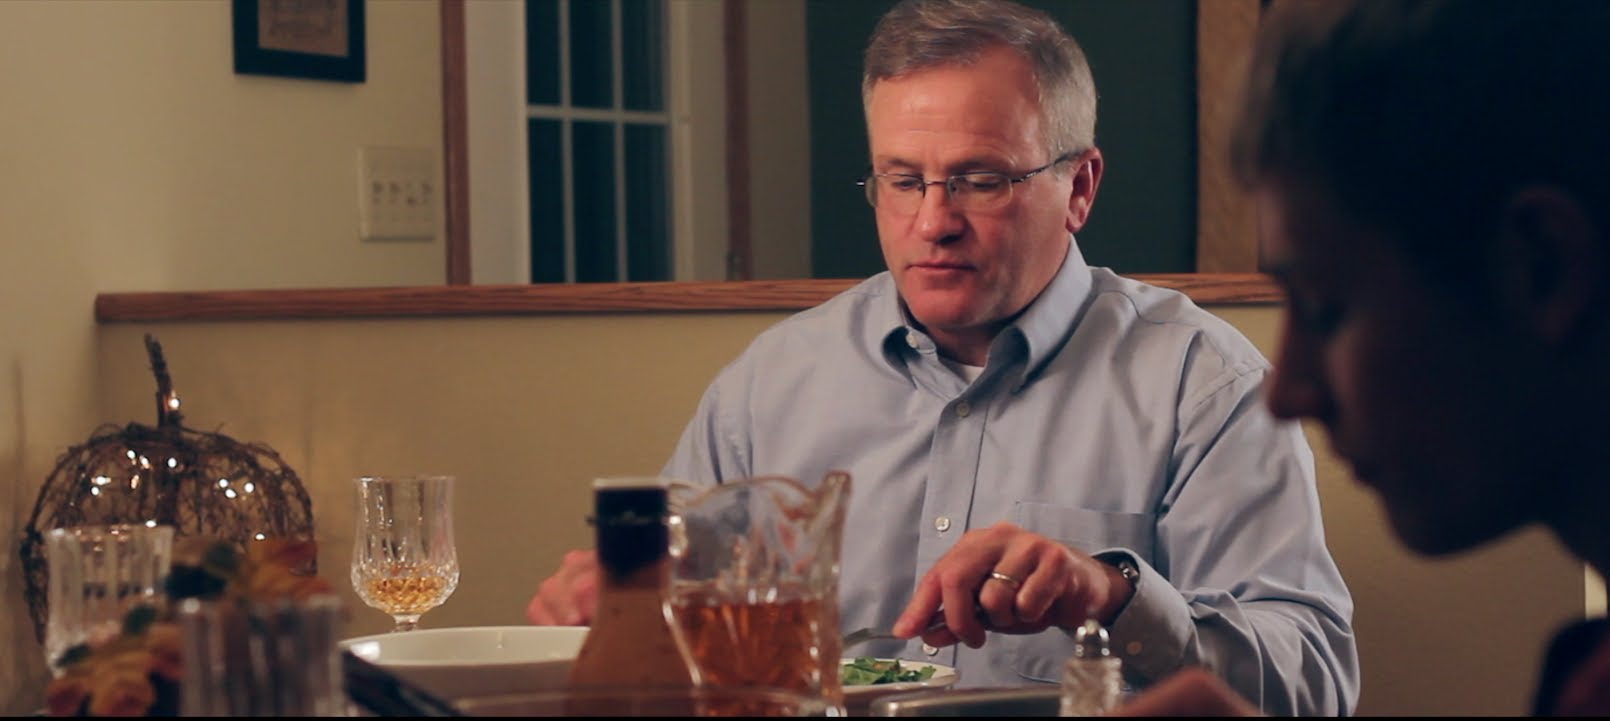 Sót kérek! - avagy az édesapa válasza ebéd közben kockuló fiaihoz – videó